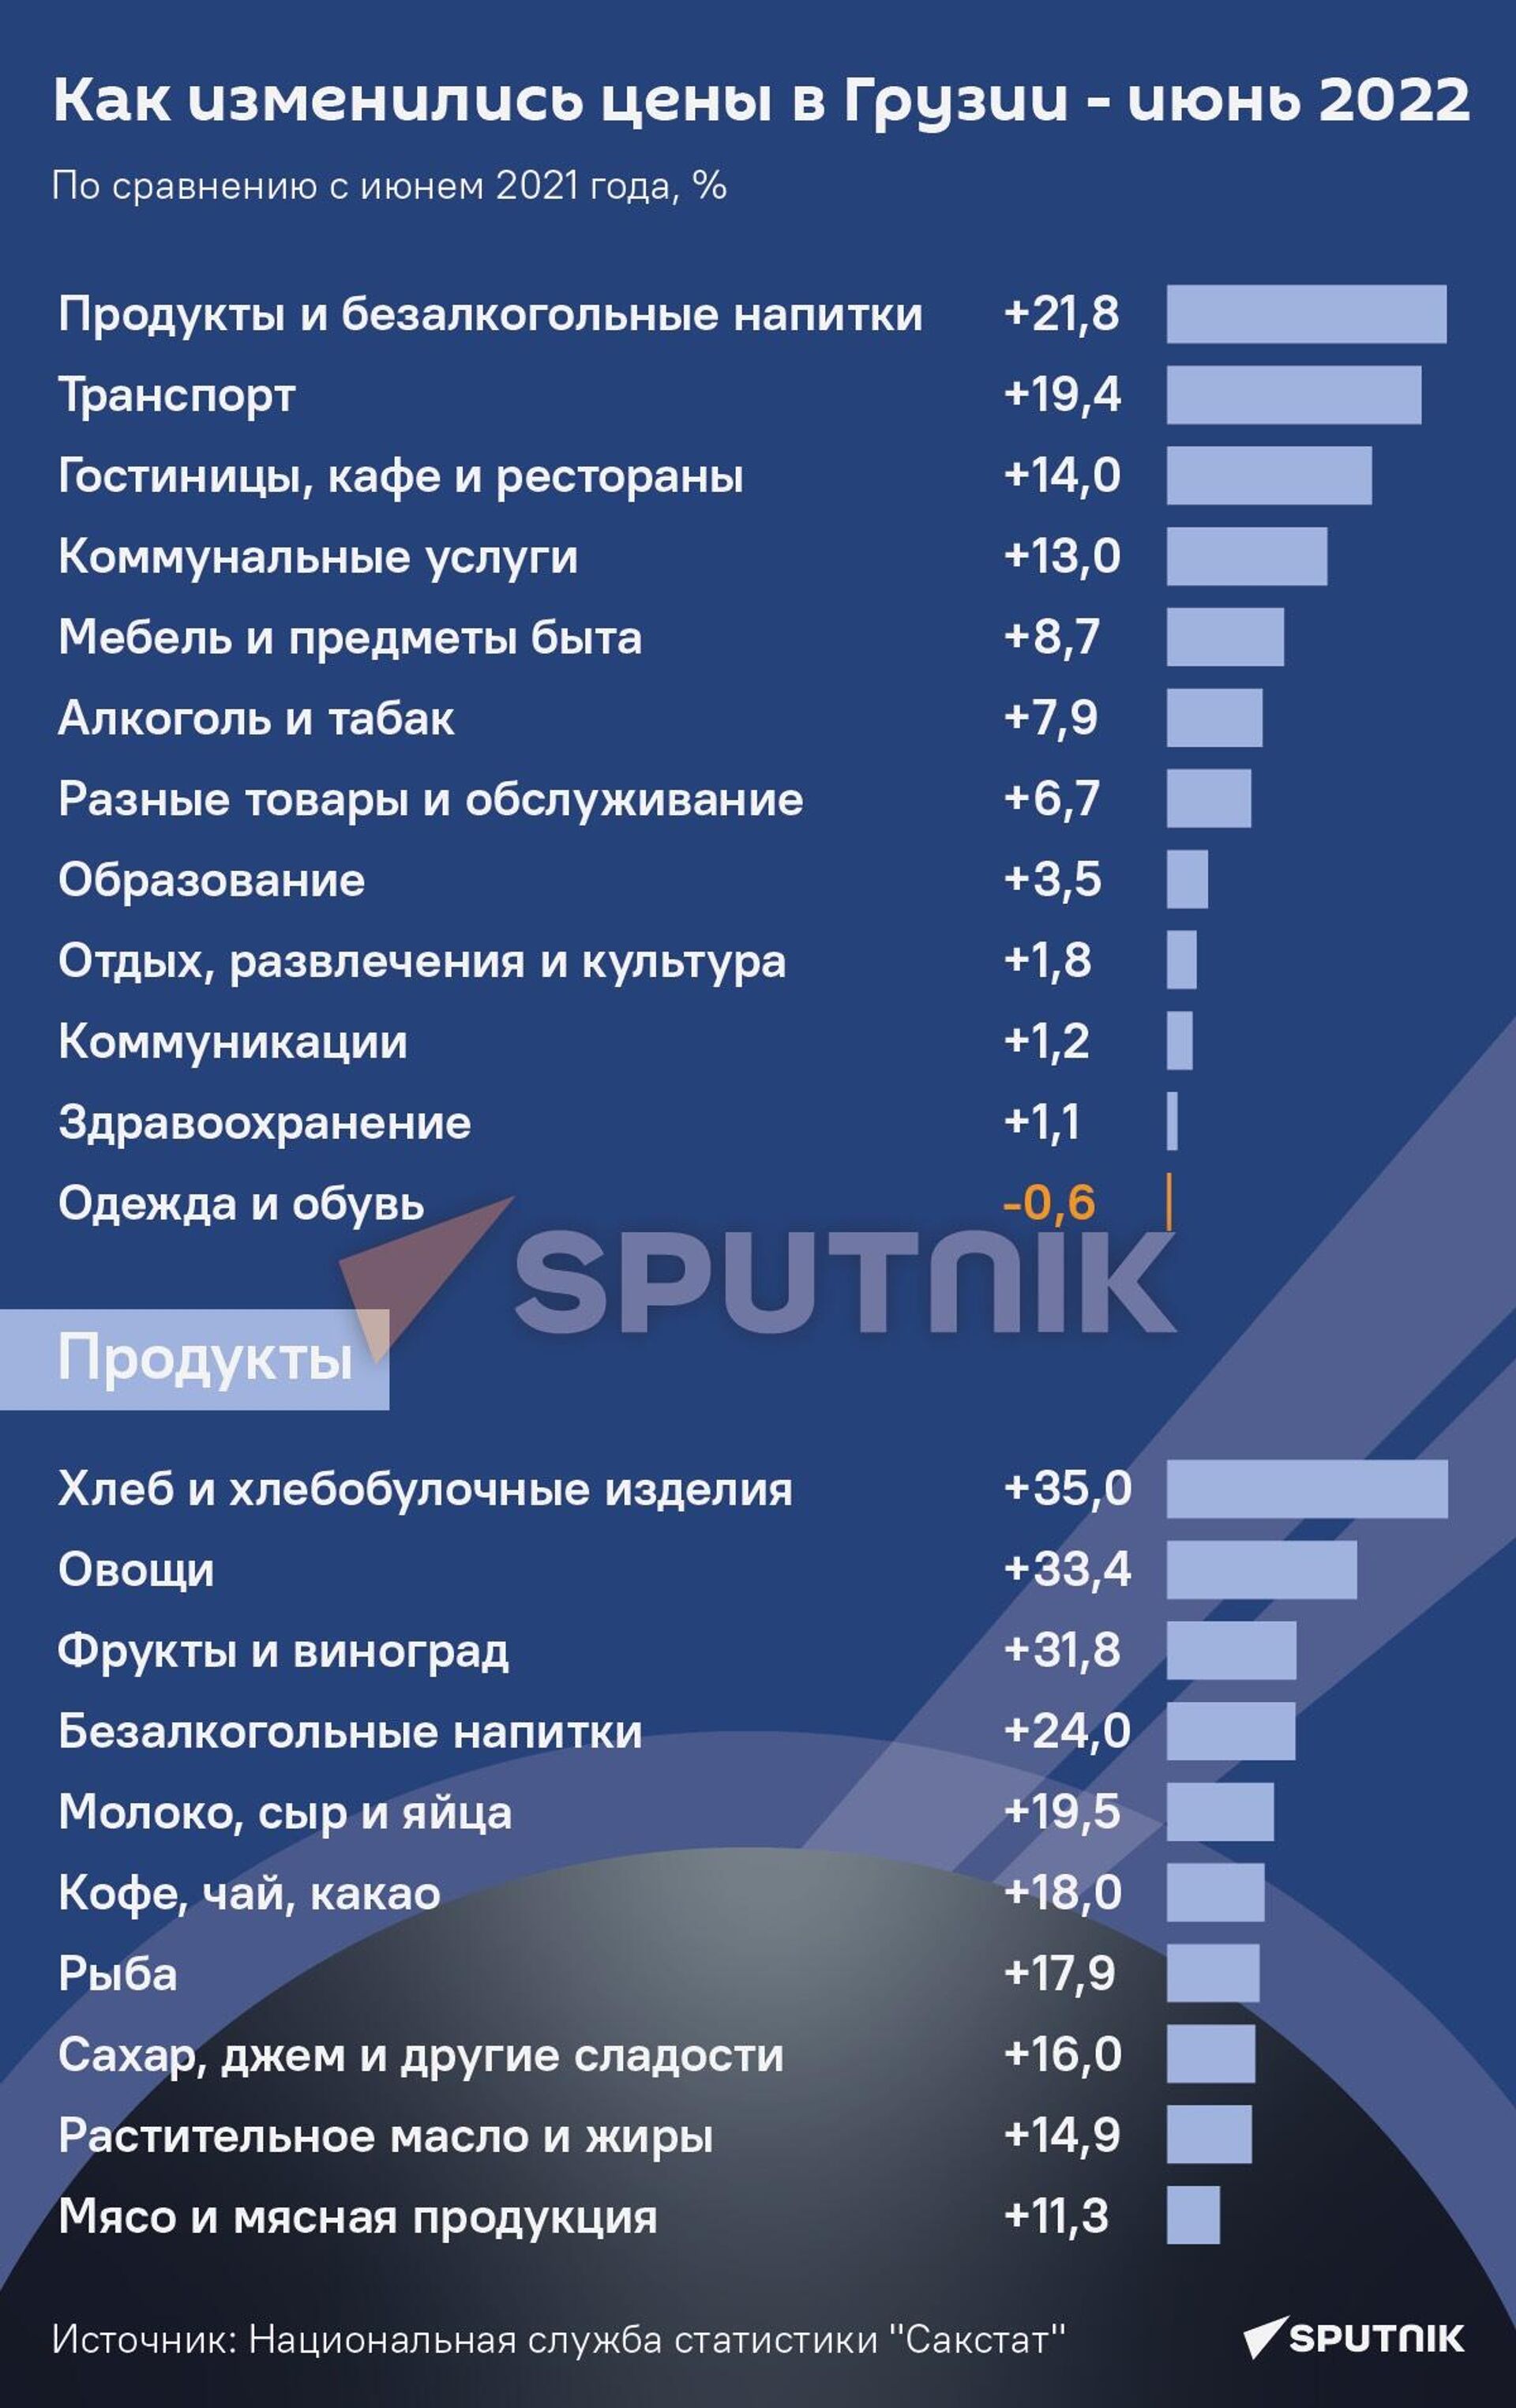 Как изменились цены в Грузии - июнь 2022 - Sputnik Грузия, 1920, 27.07.2022